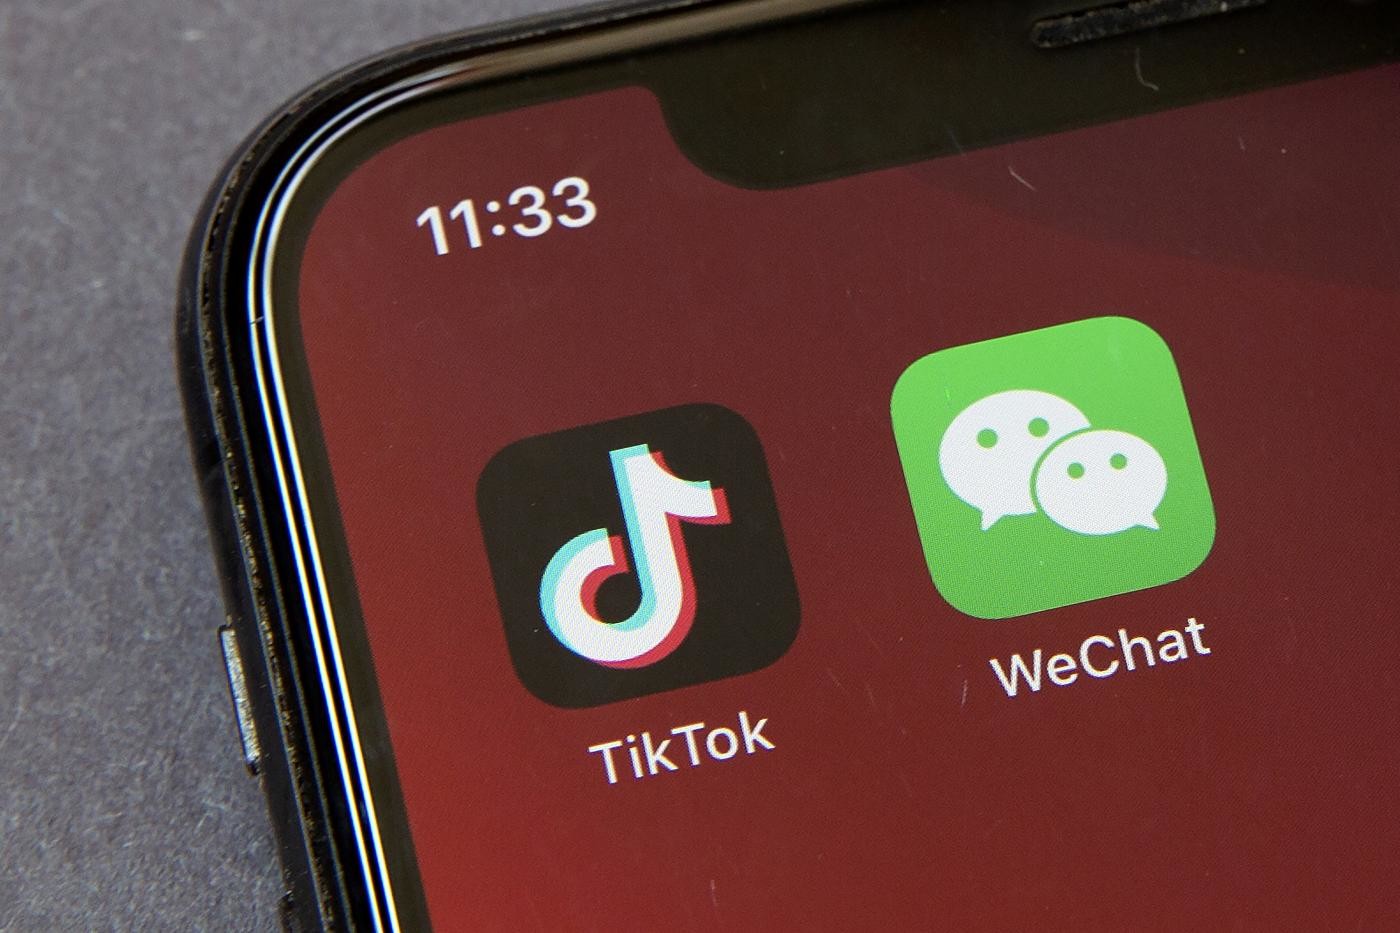 Usa, Trump vieta TikTok e WeChat:  “per salvaguardare la sicurezza nazionale”